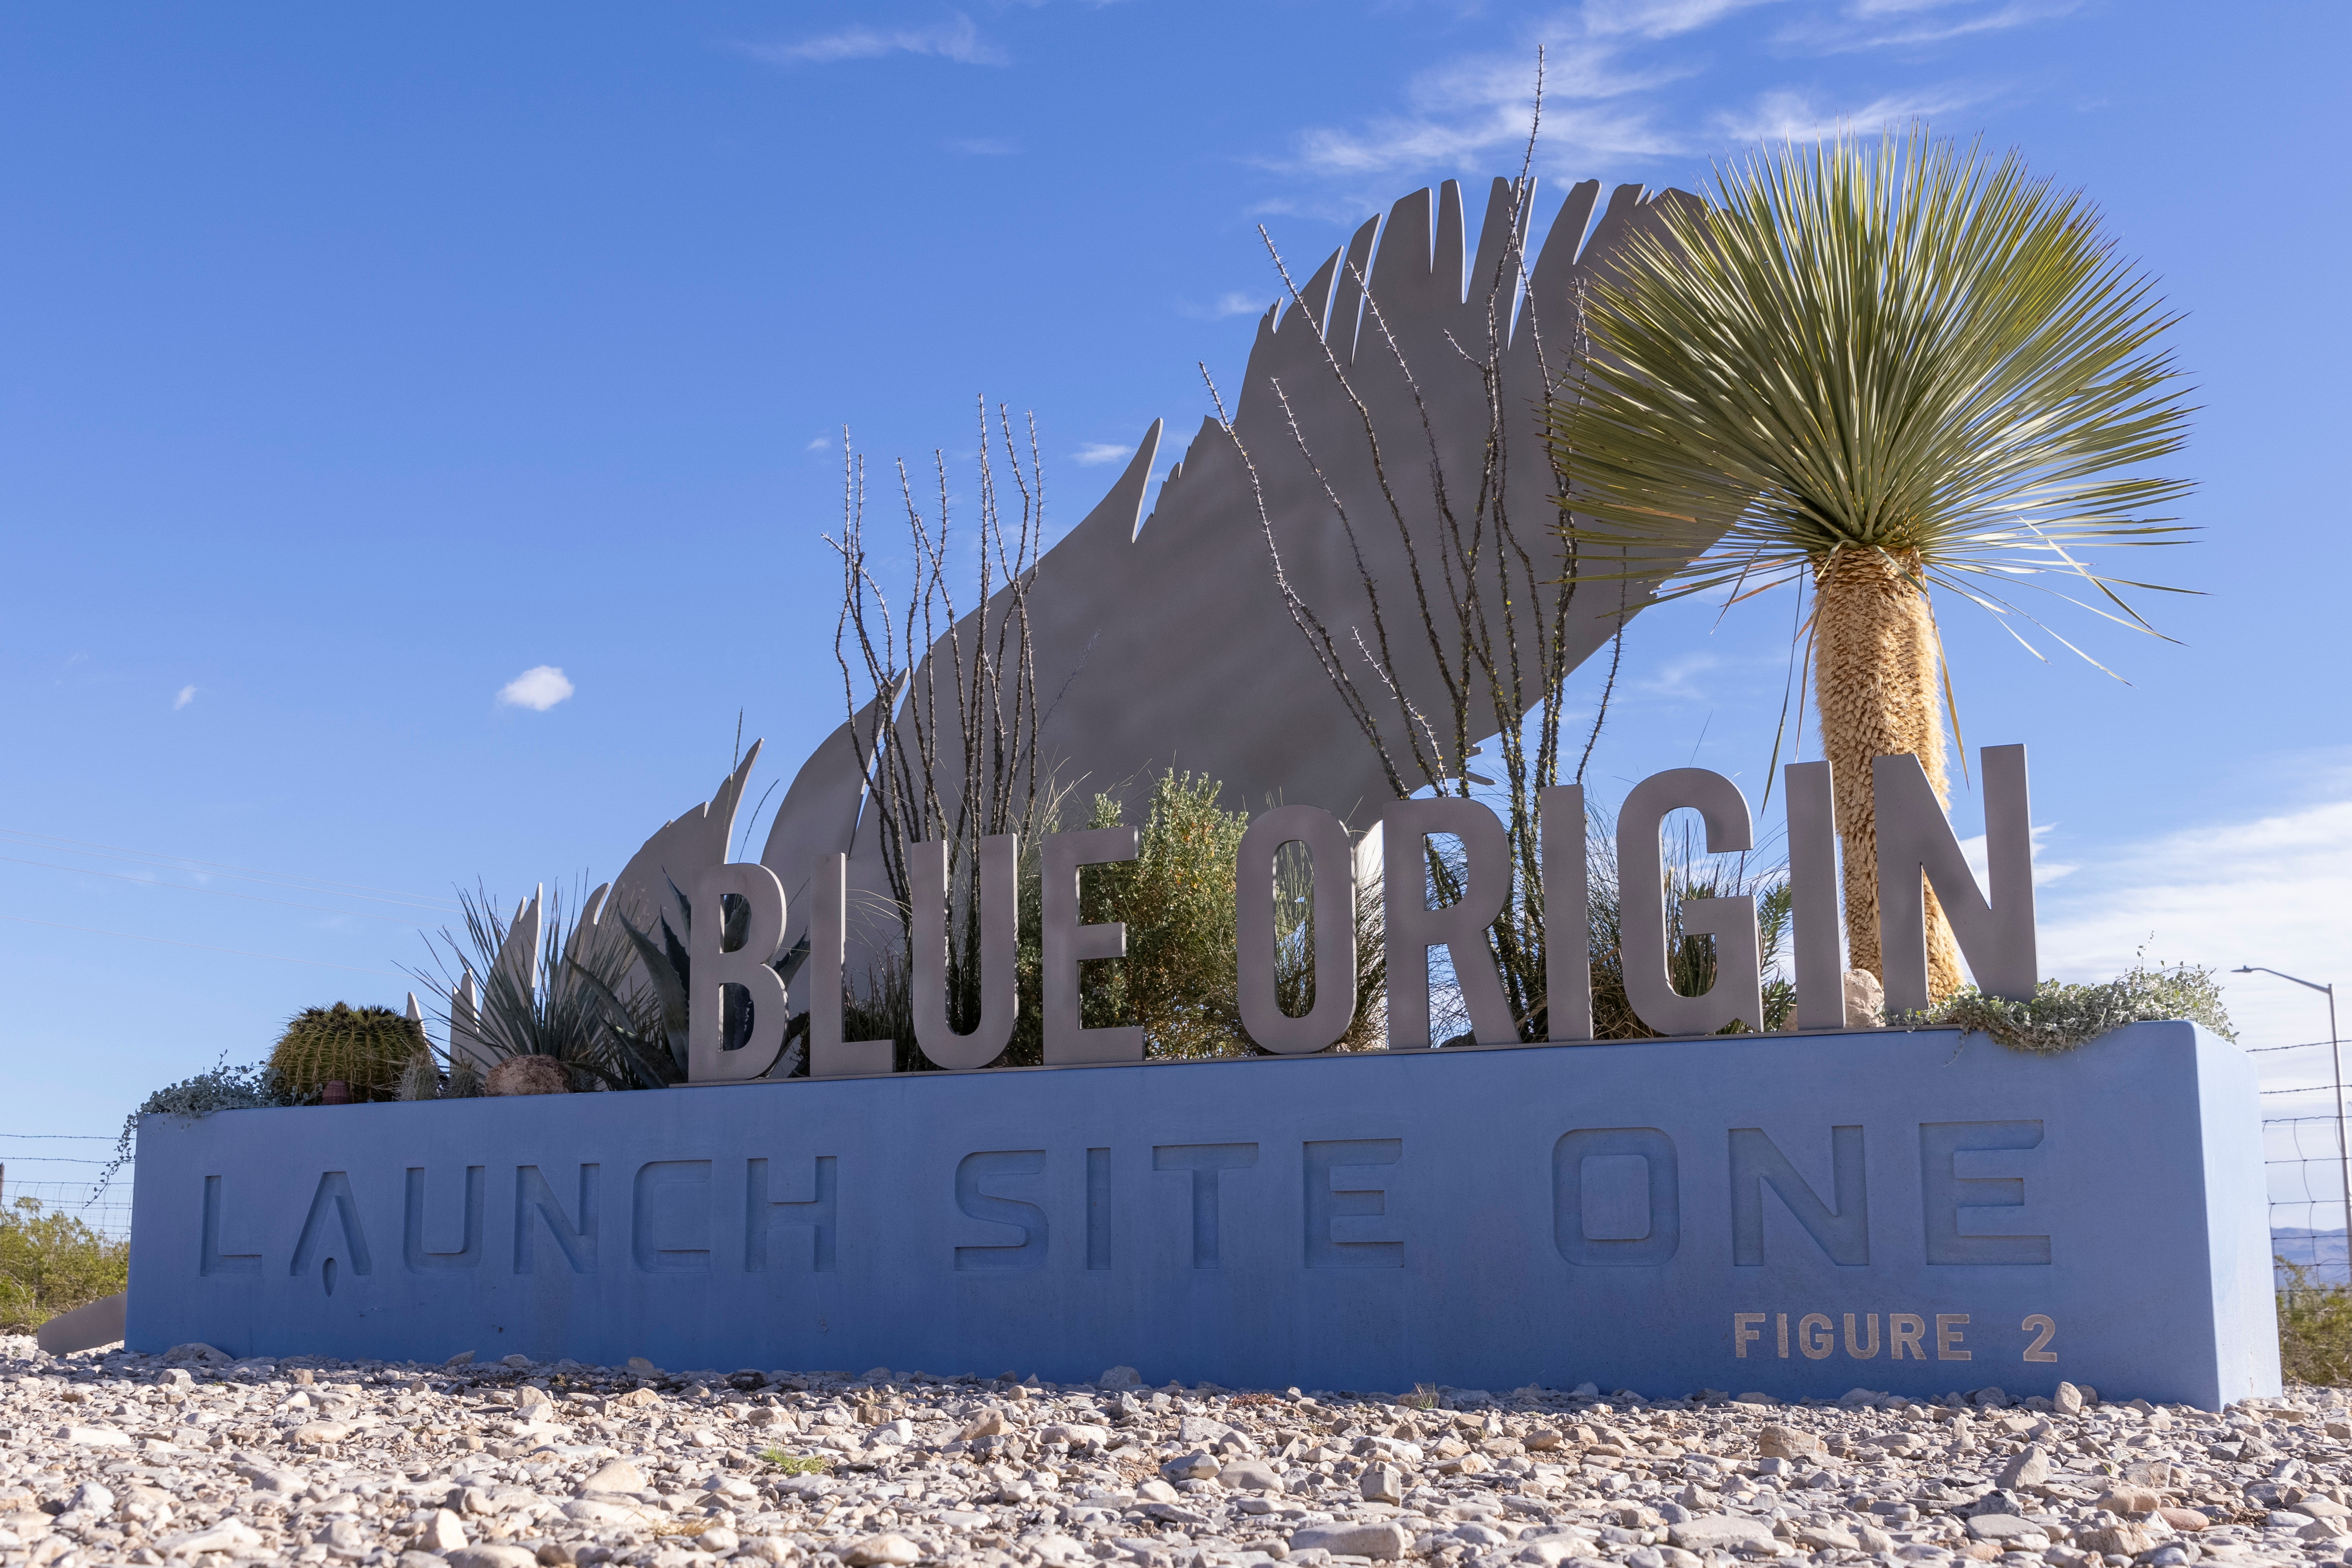 Billionaire Jeff Bezos's space company Blue Origin will send 